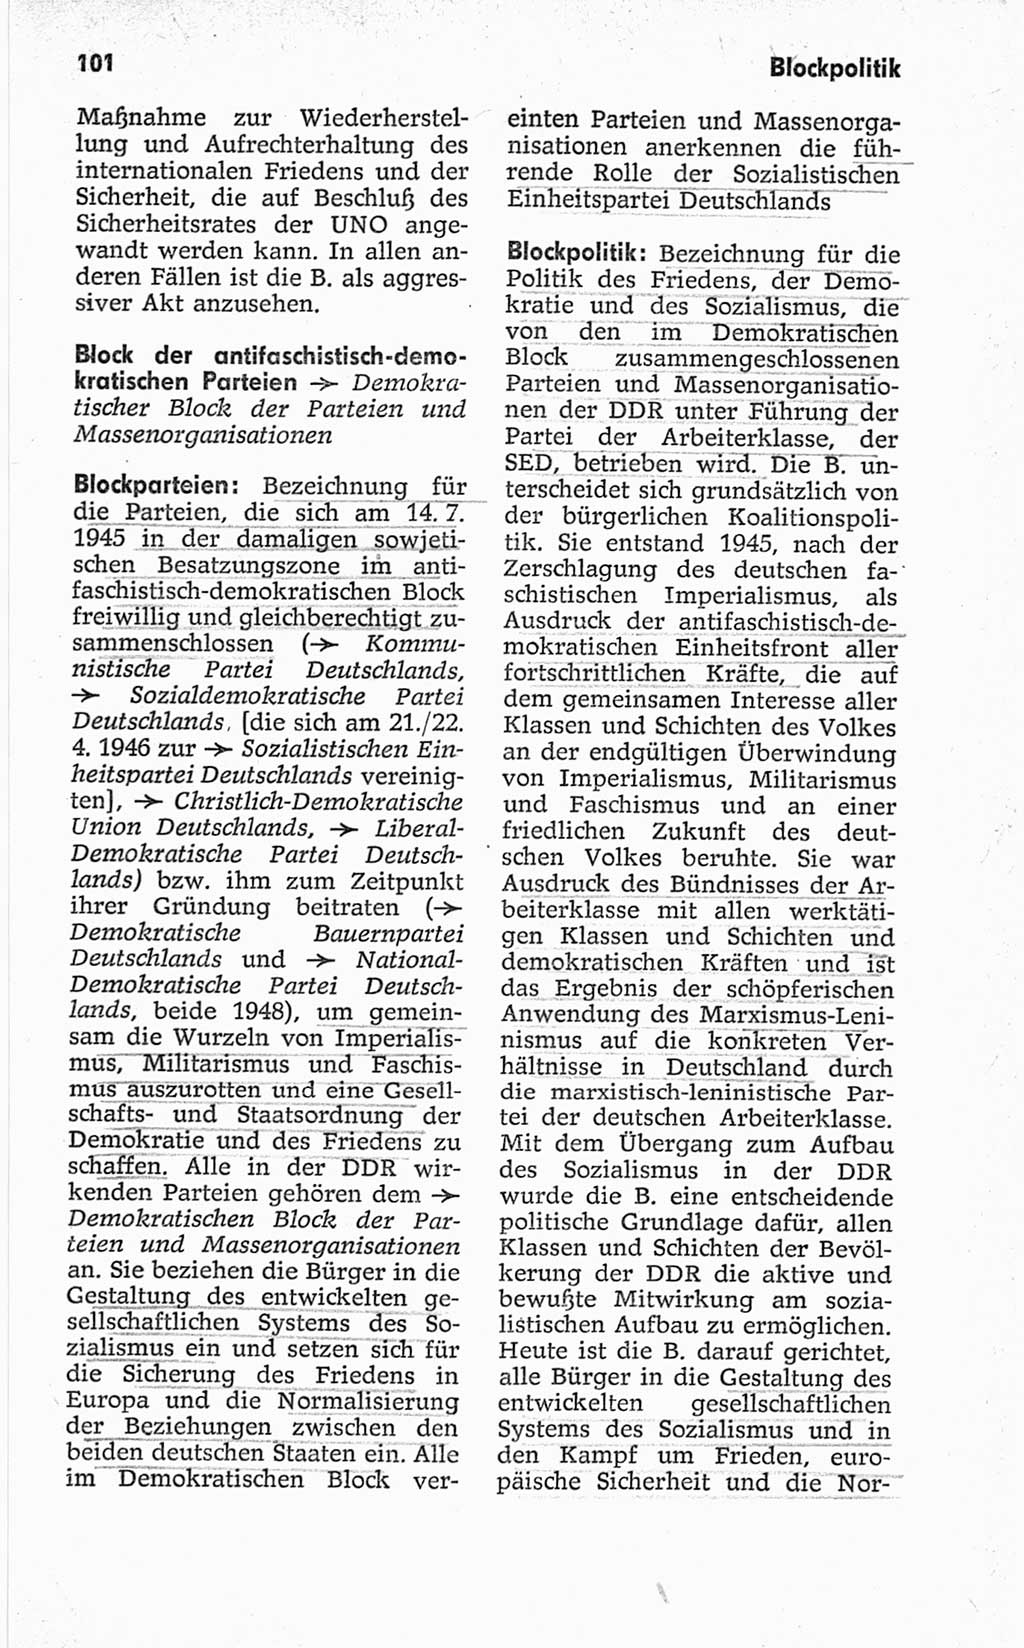 Kleines politisches Wörterbuch [Deutsche Demokratische Republik (DDR)] 1967, Seite 101 (Kl. pol. Wb. DDR 1967, S. 101)